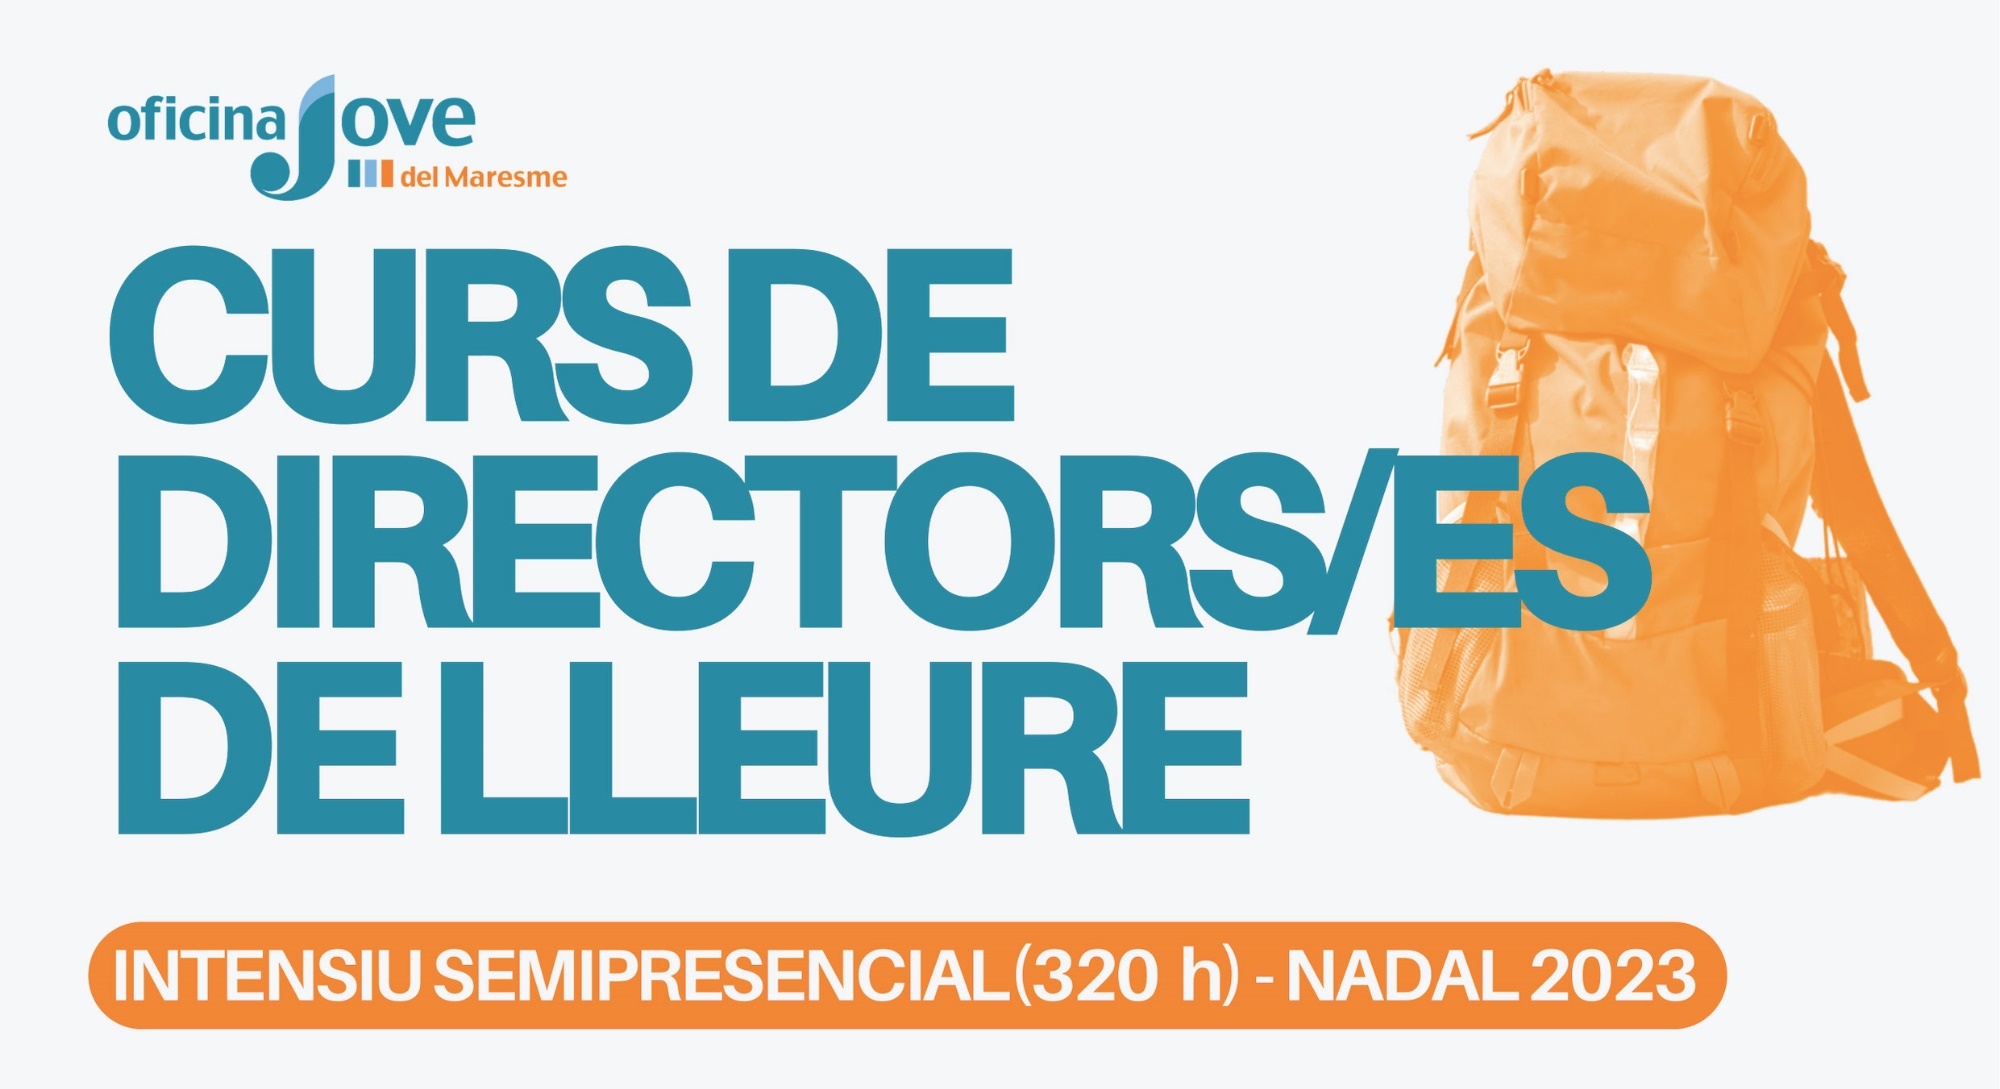 Curs de directors/es de lleure a Mataró